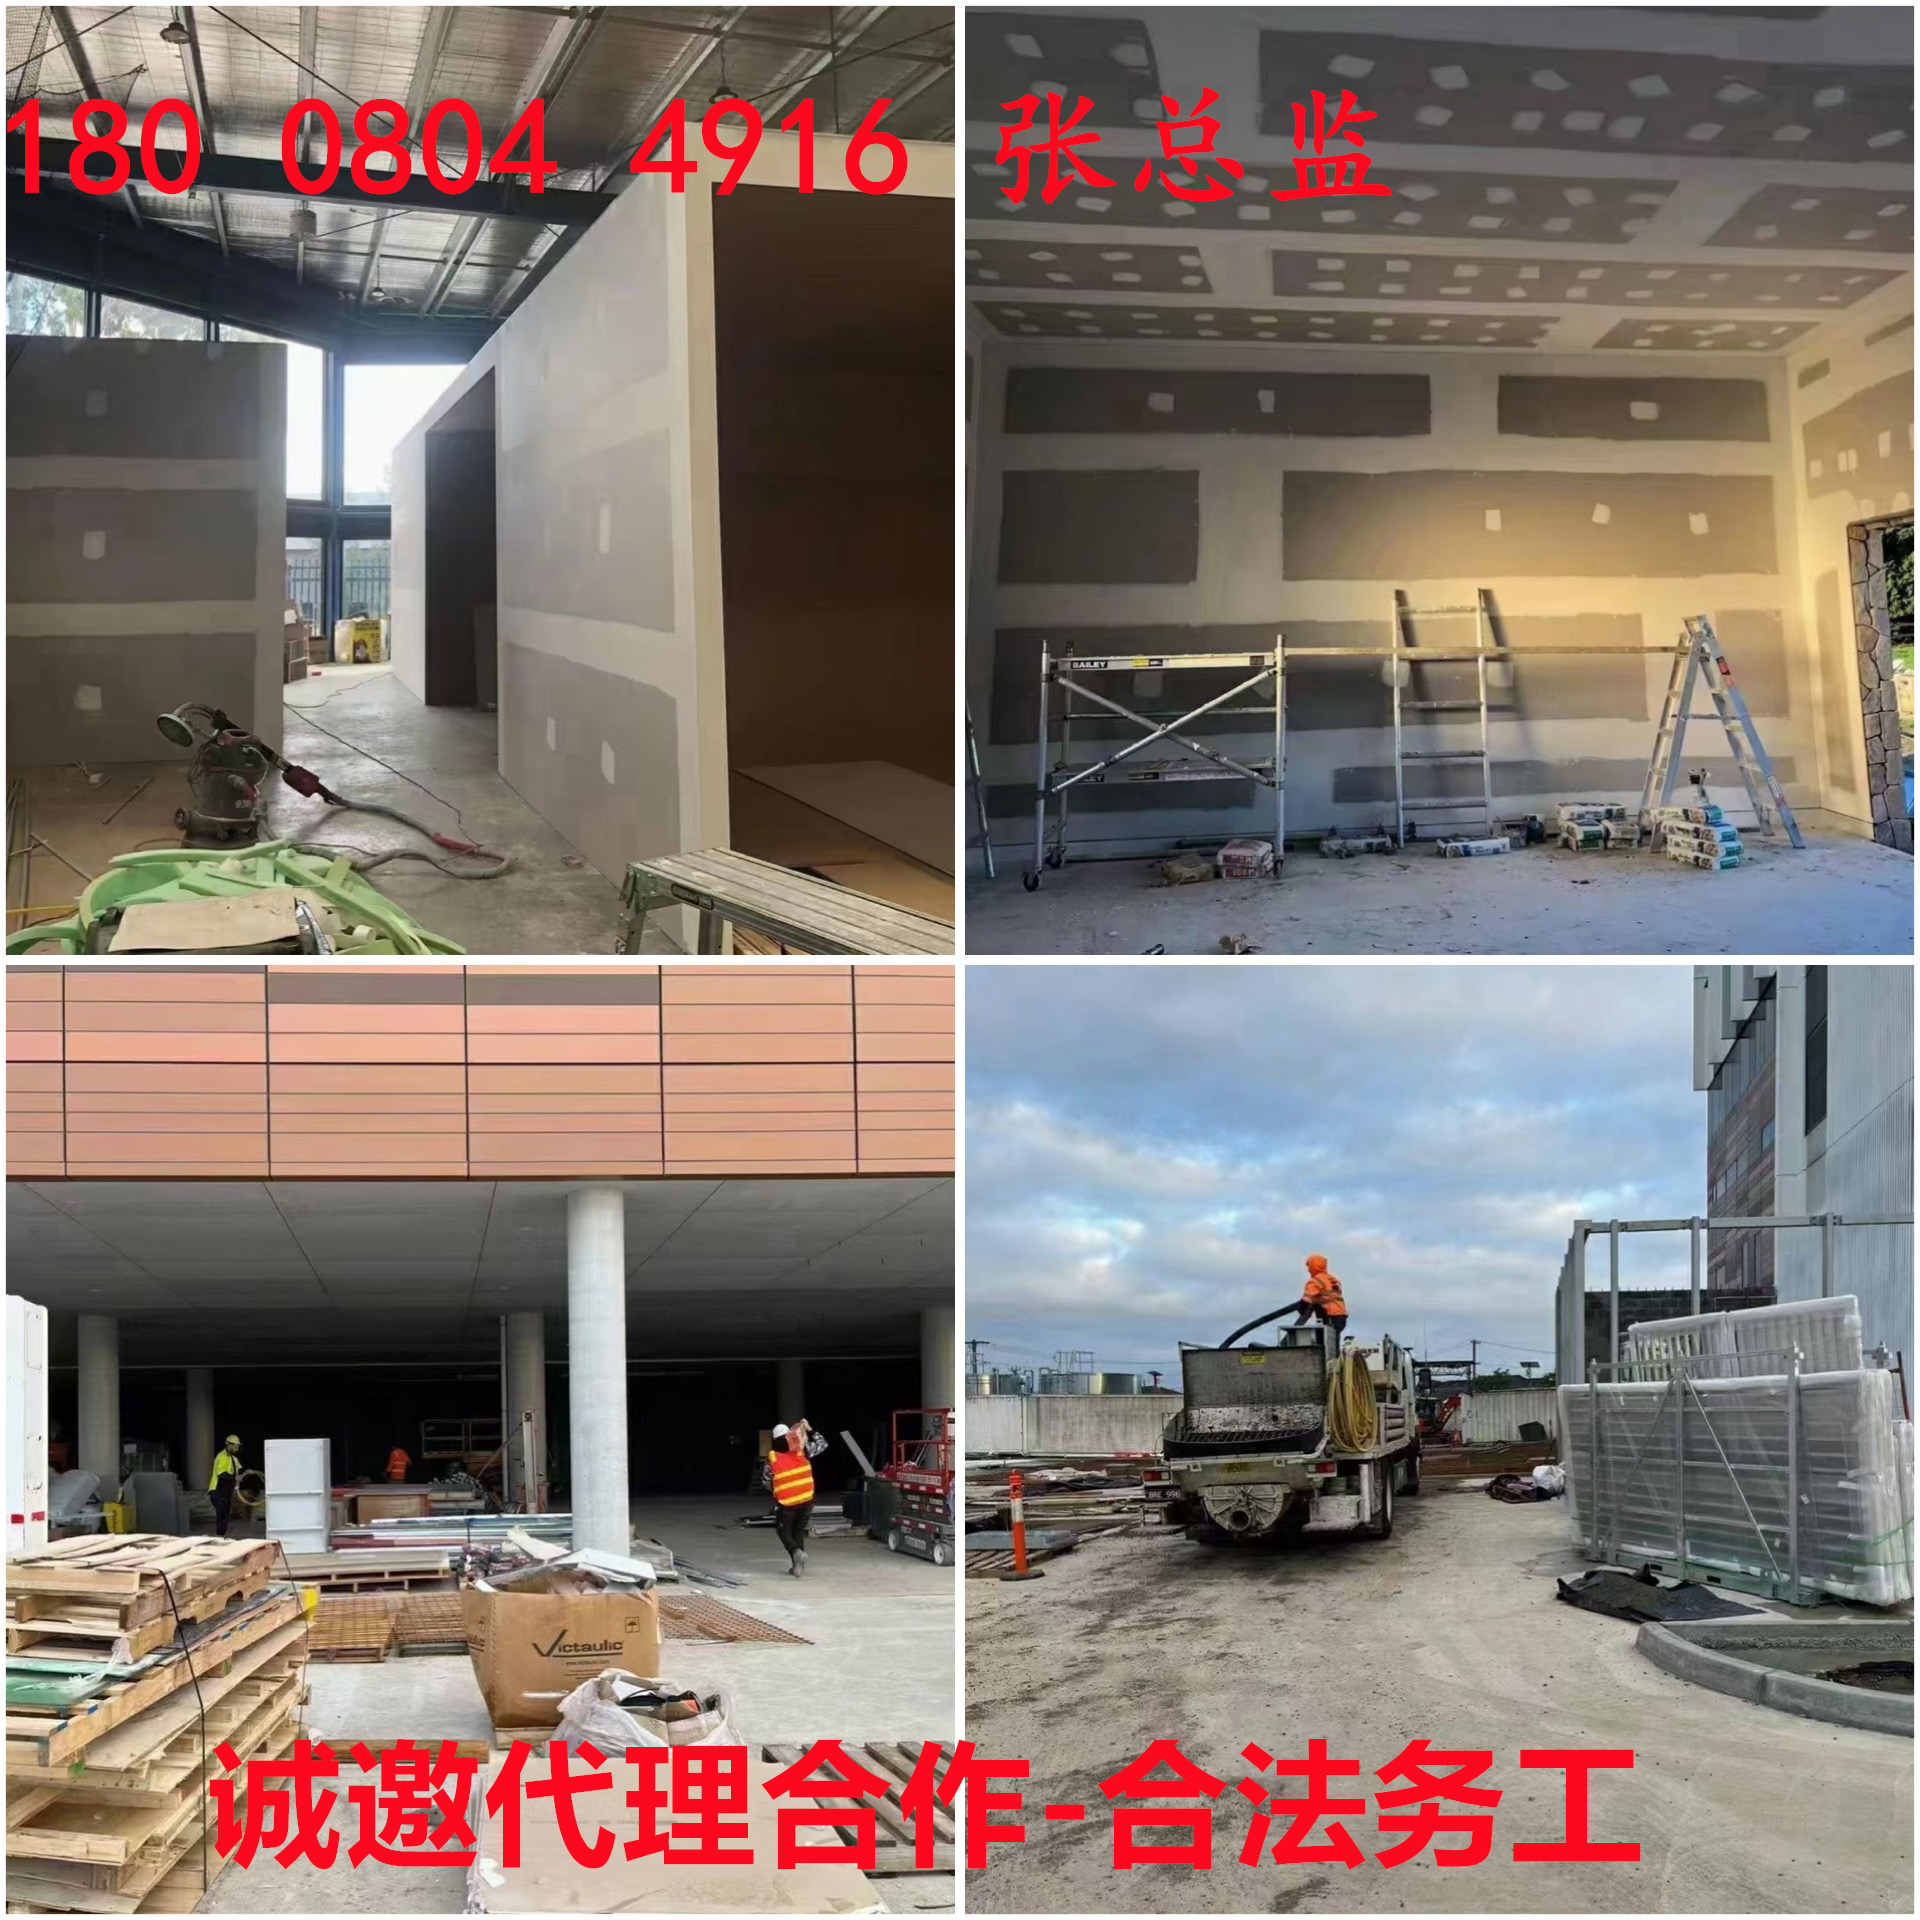 重庆武隆有实力的出国劳务公司招油漆工.瓷砖工澳大利亚-俄罗斯